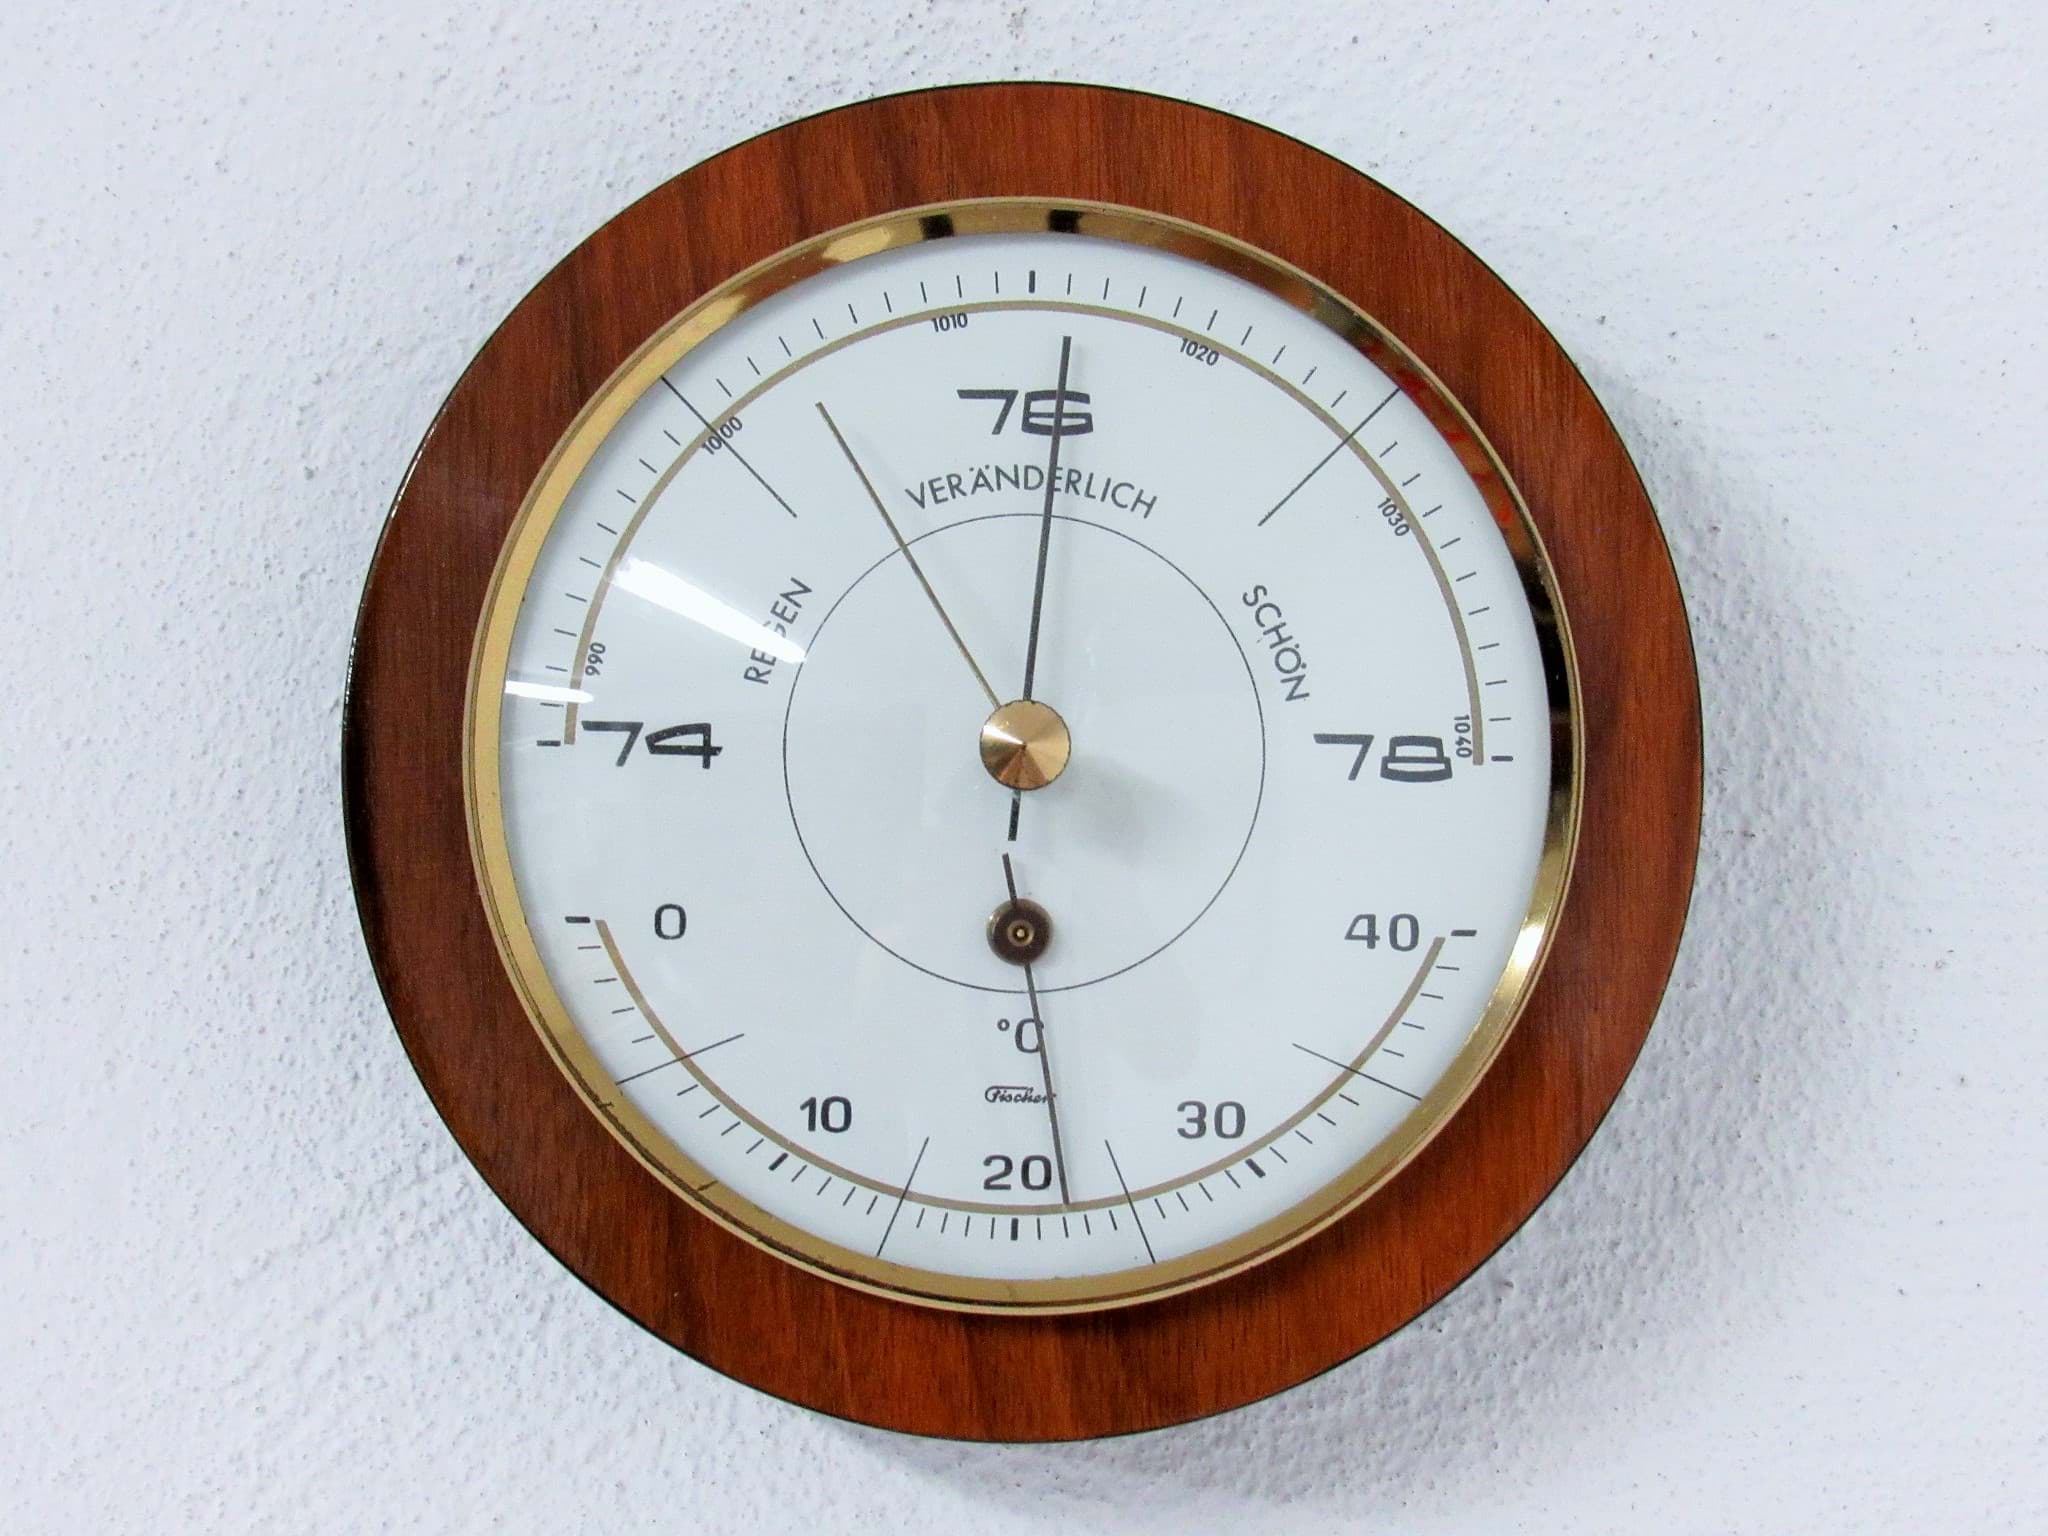 Afbeelding van Runde Wetterstation mit Barometer & Thermometer um 1960/70, wohl Palisander Holz, Hersteller Fischer